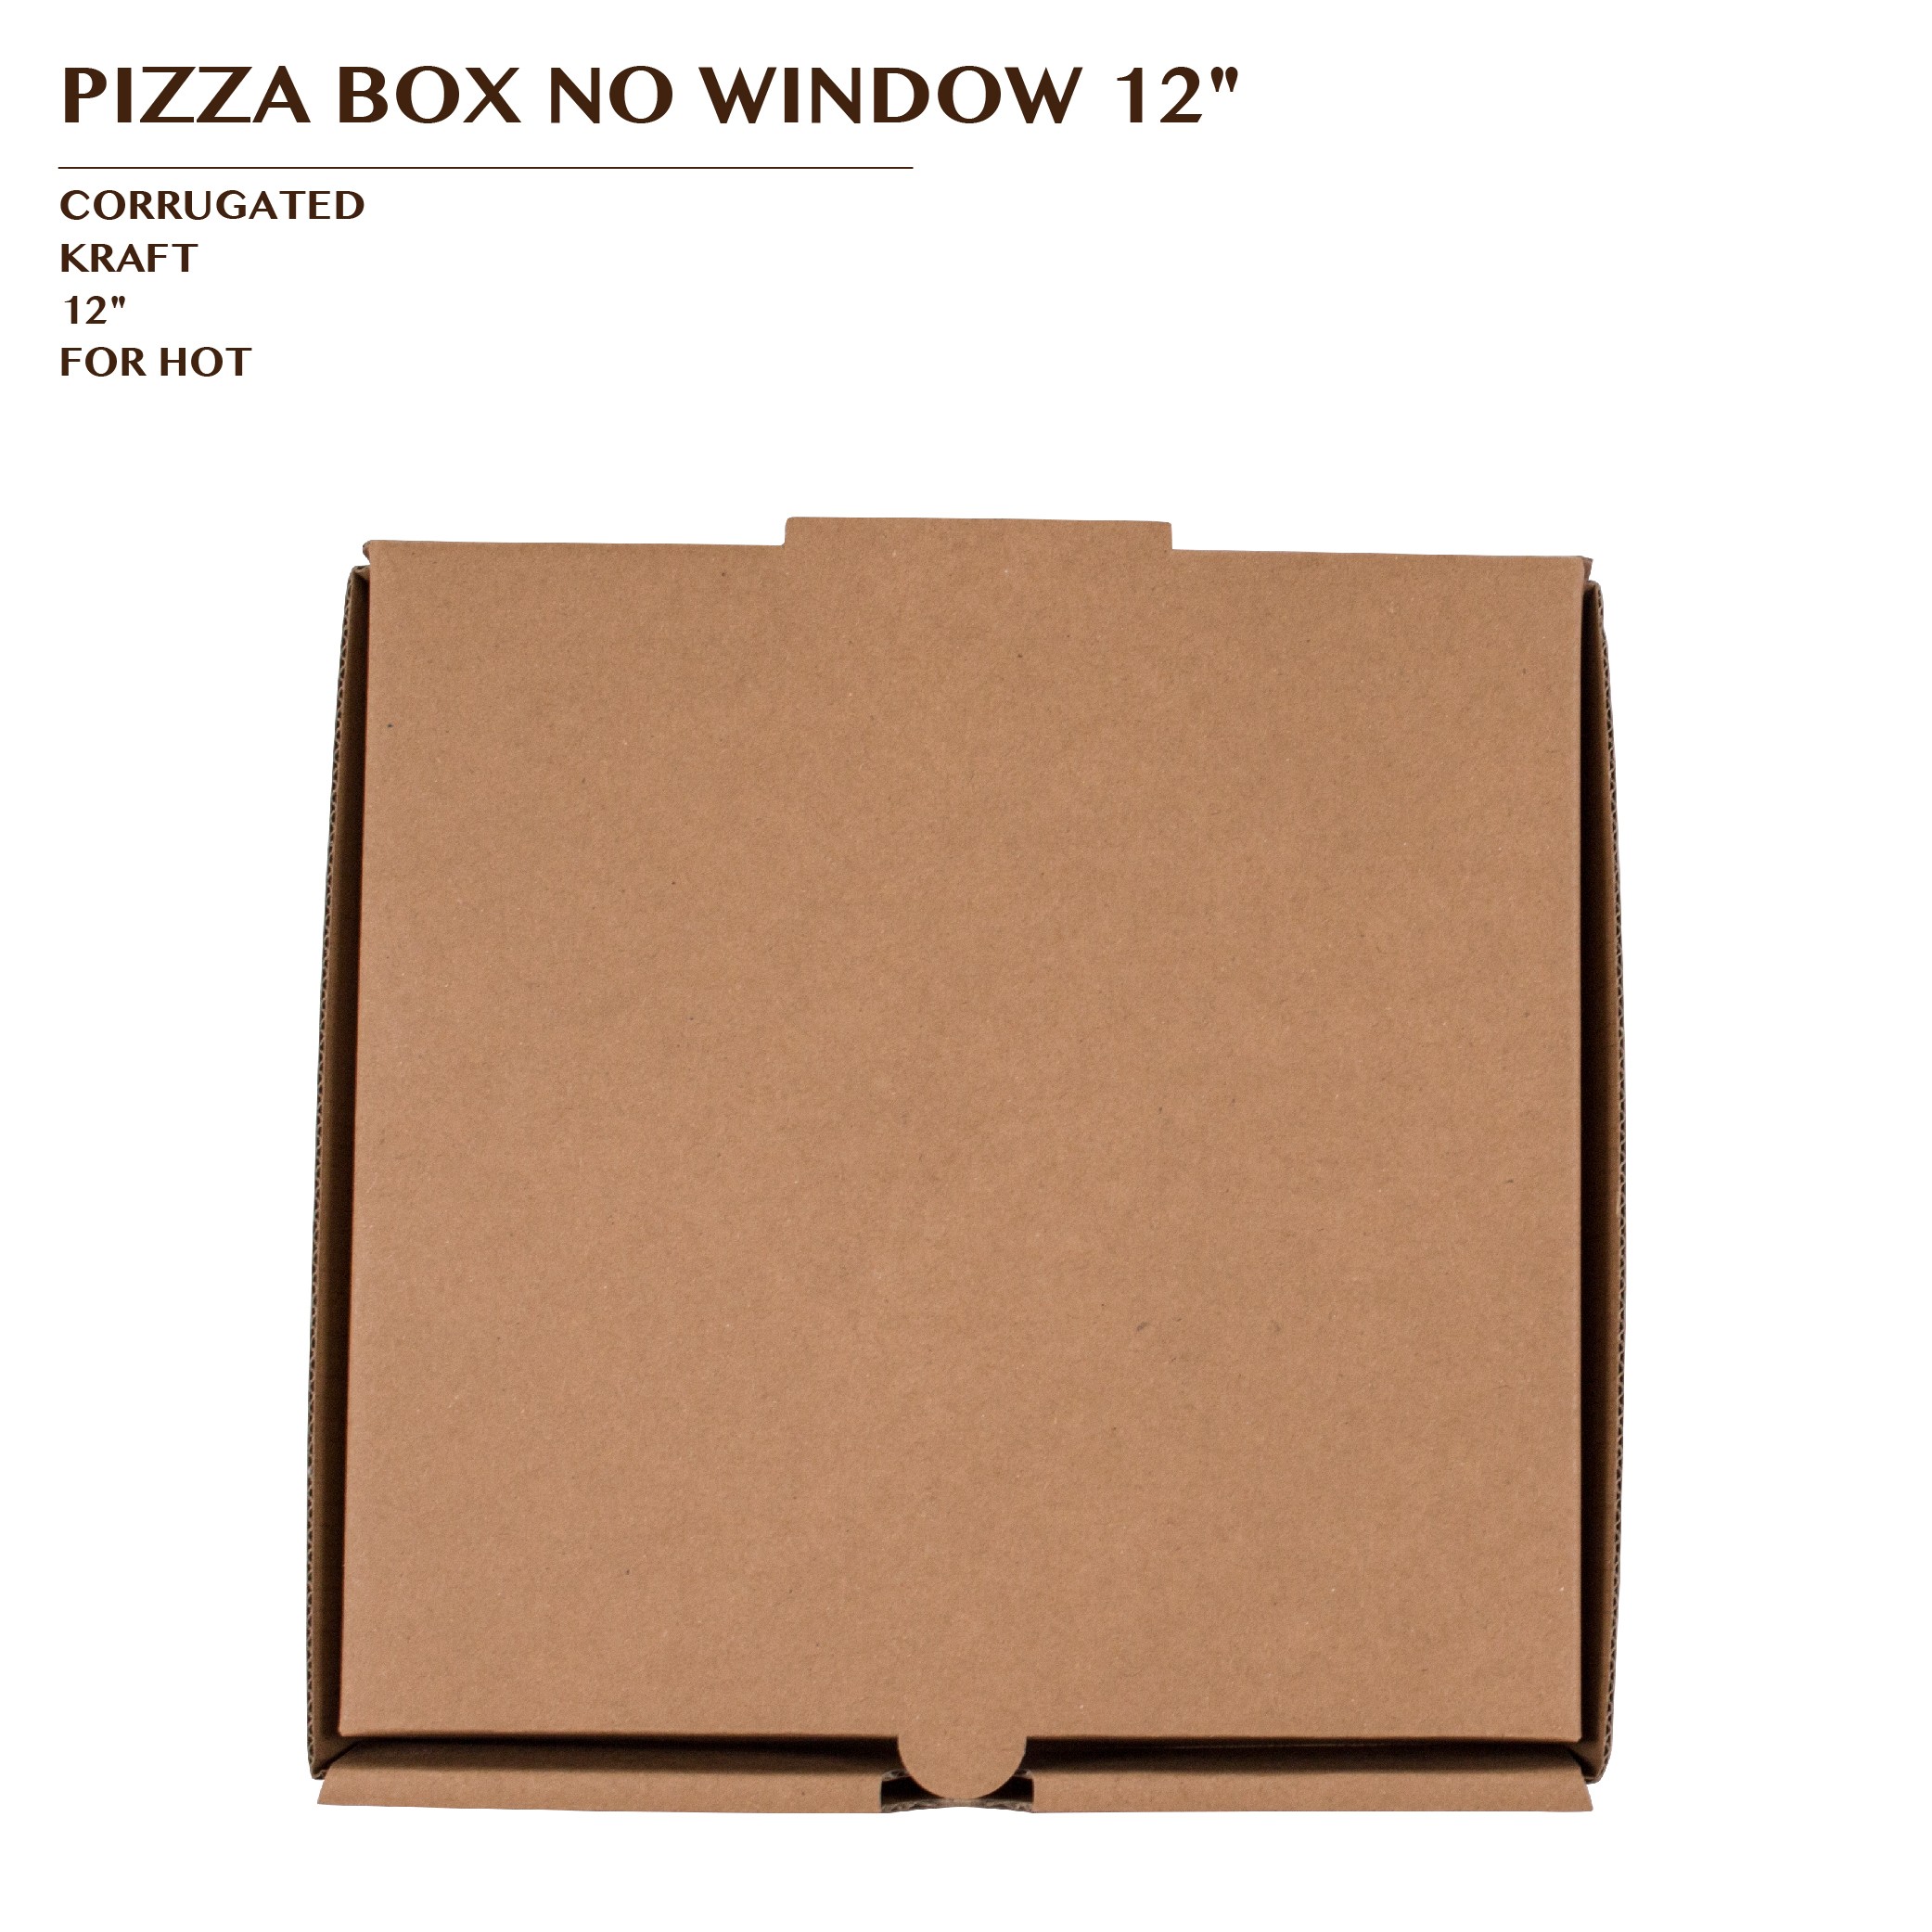 PRE-ORDER PIZZA BOX 12"